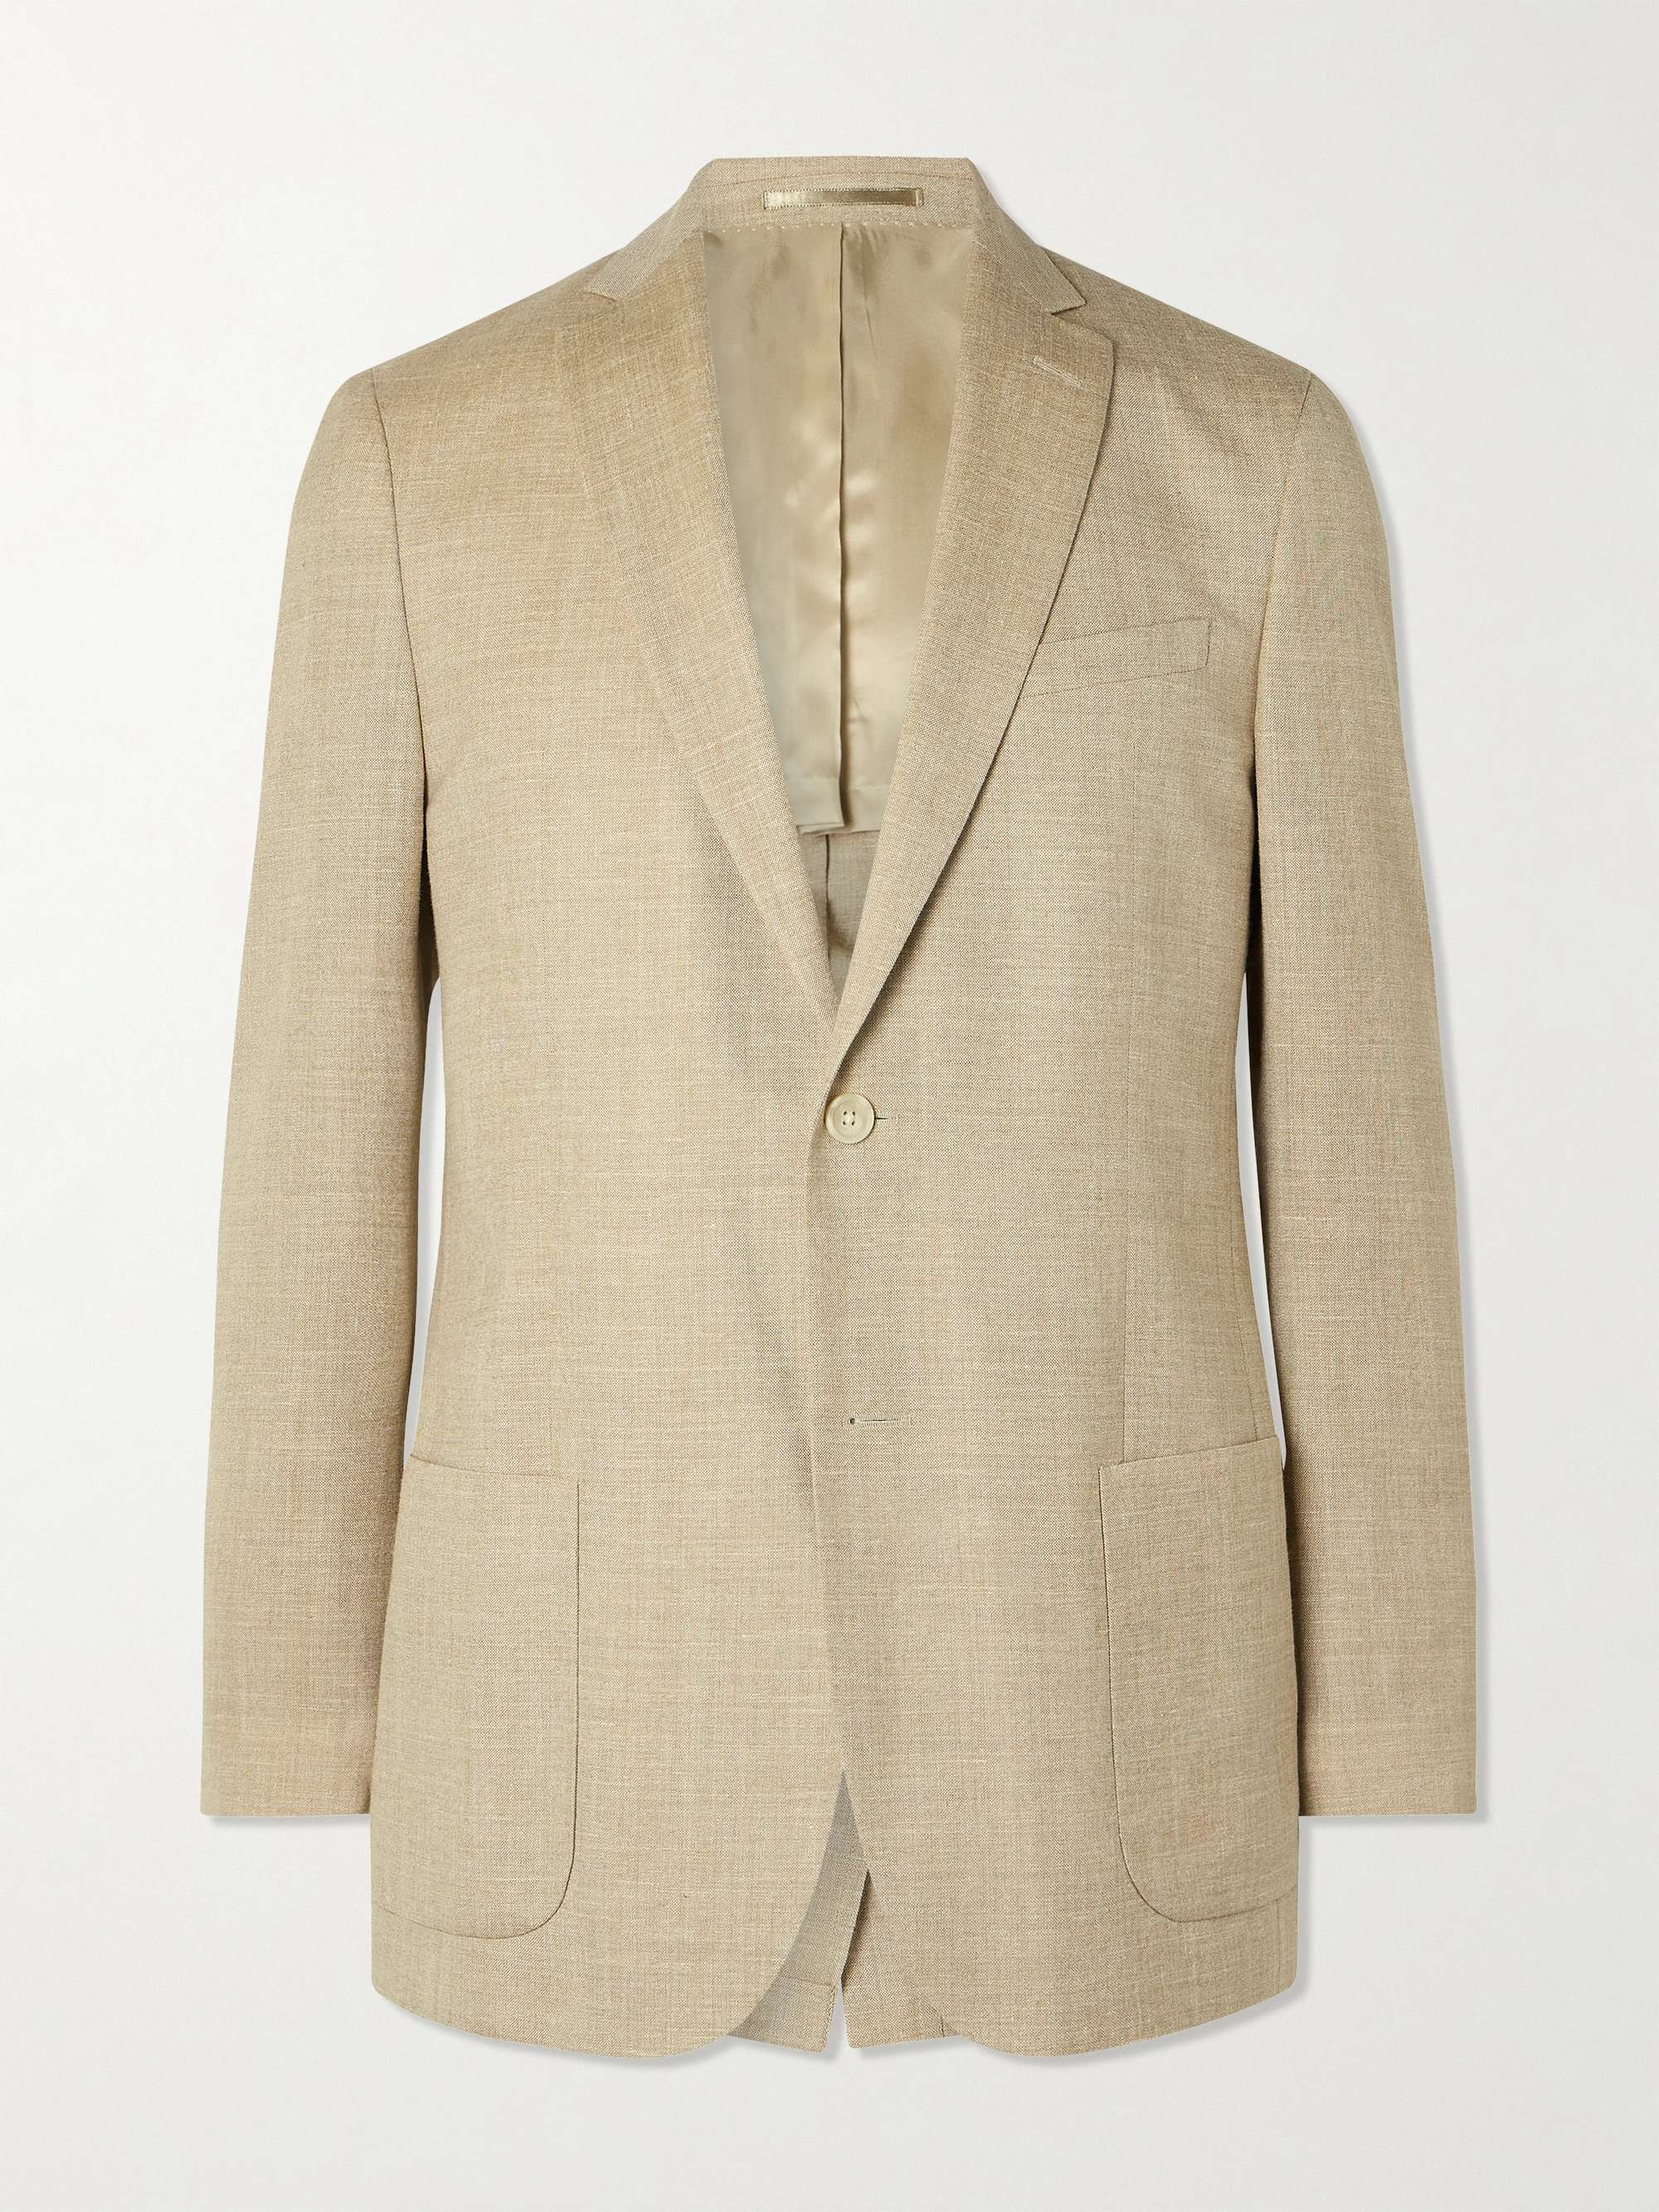 MR P. Wool, Silk and Linen-Blend Suit Jacket for Men | MR PORTER